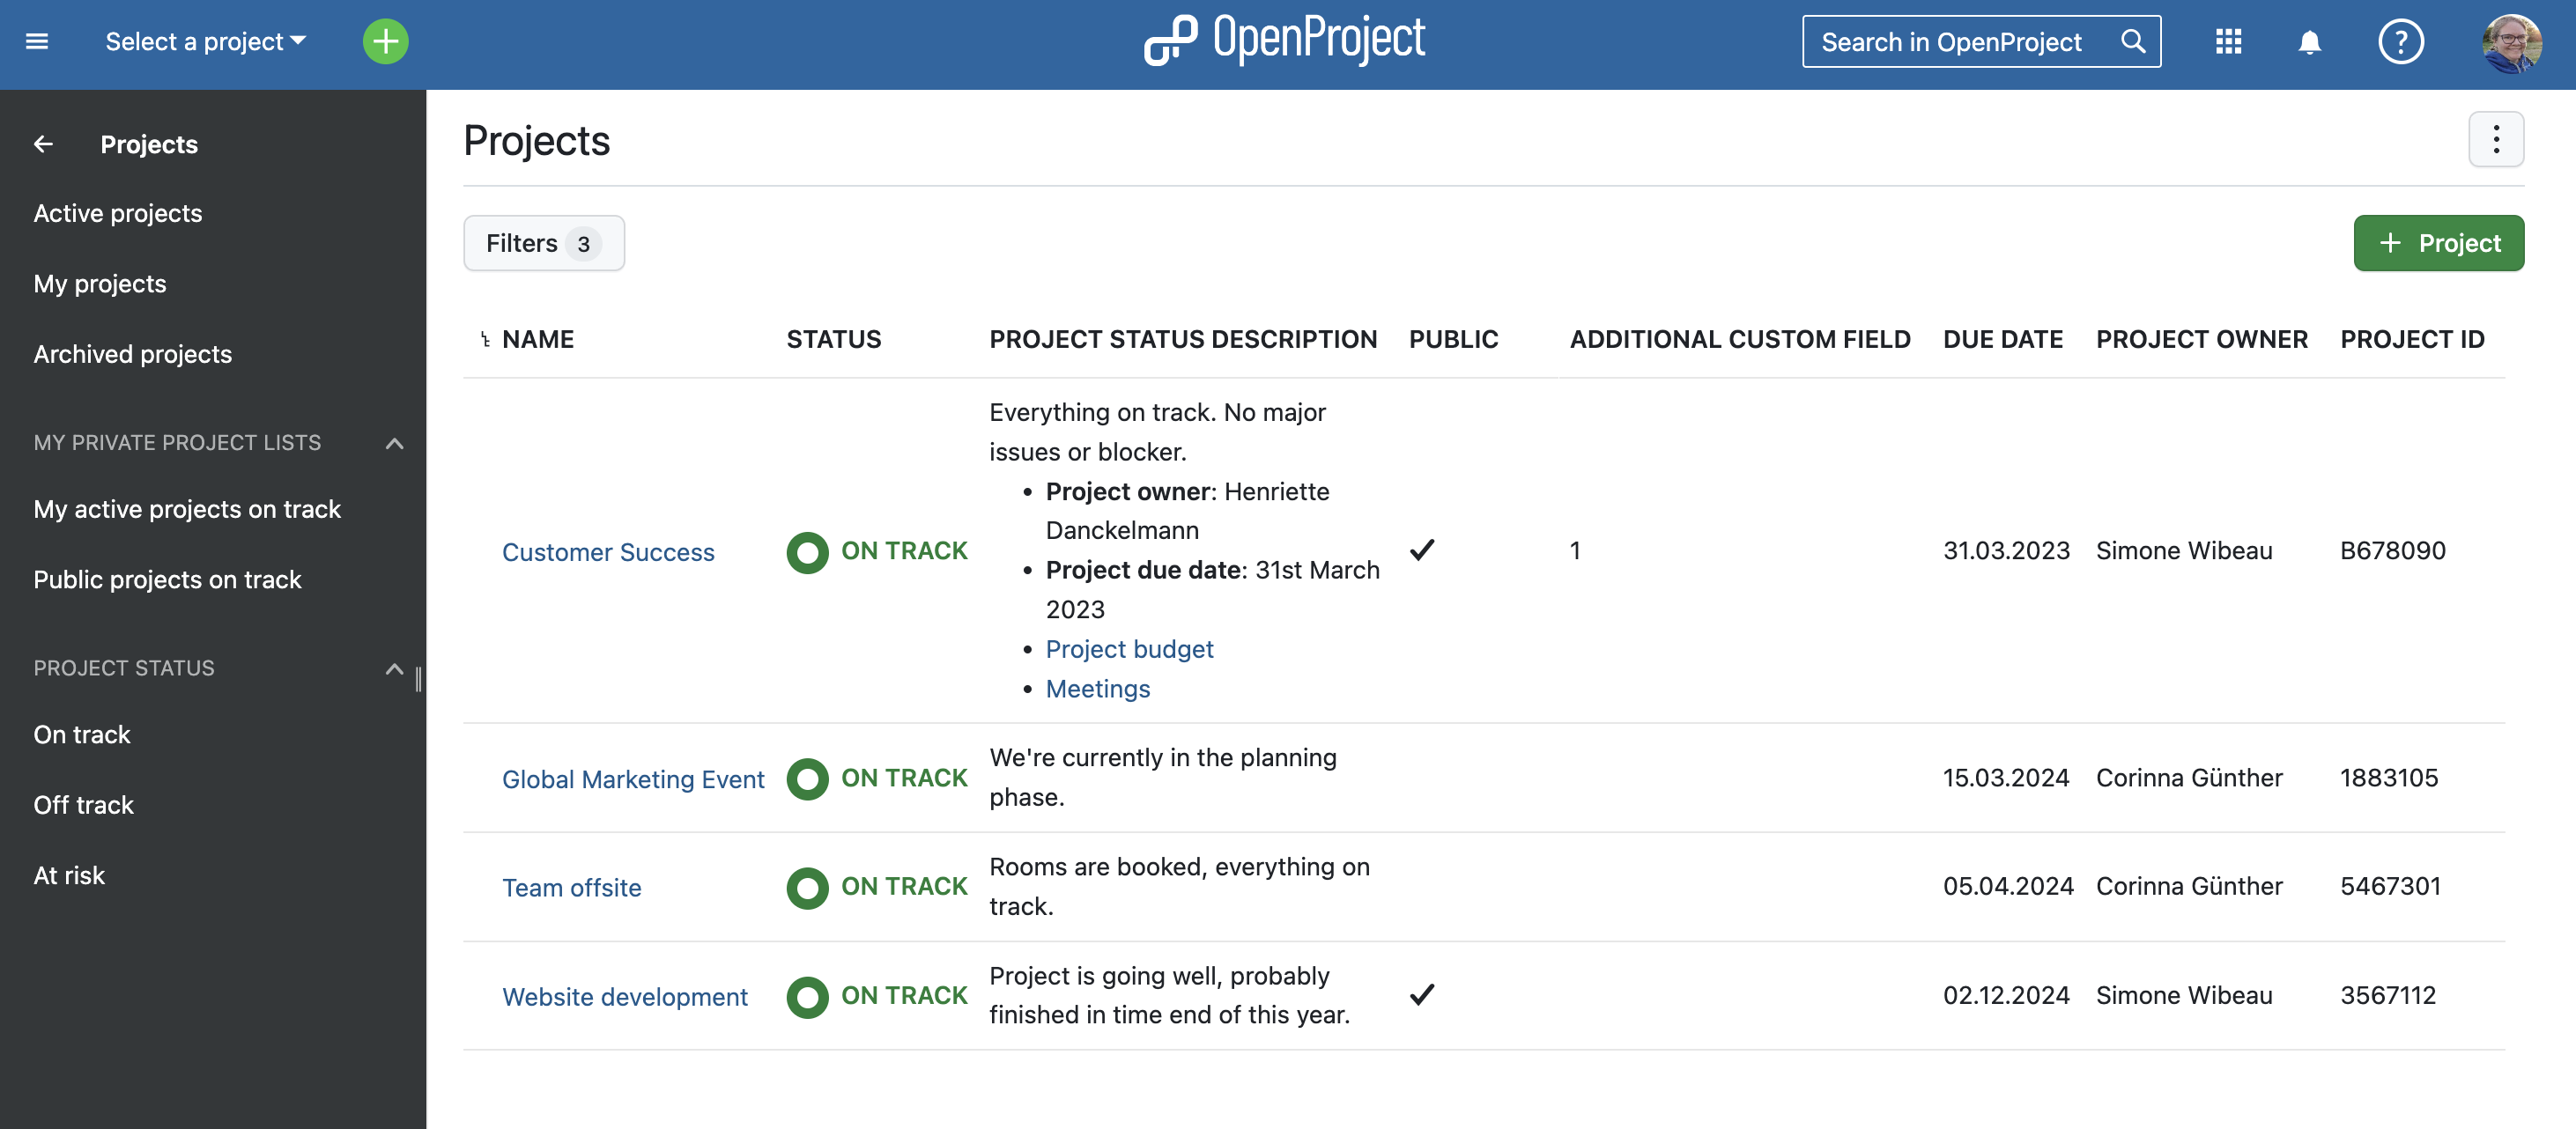 mostrar campos personalizados de proyectos en la lista de proyectos